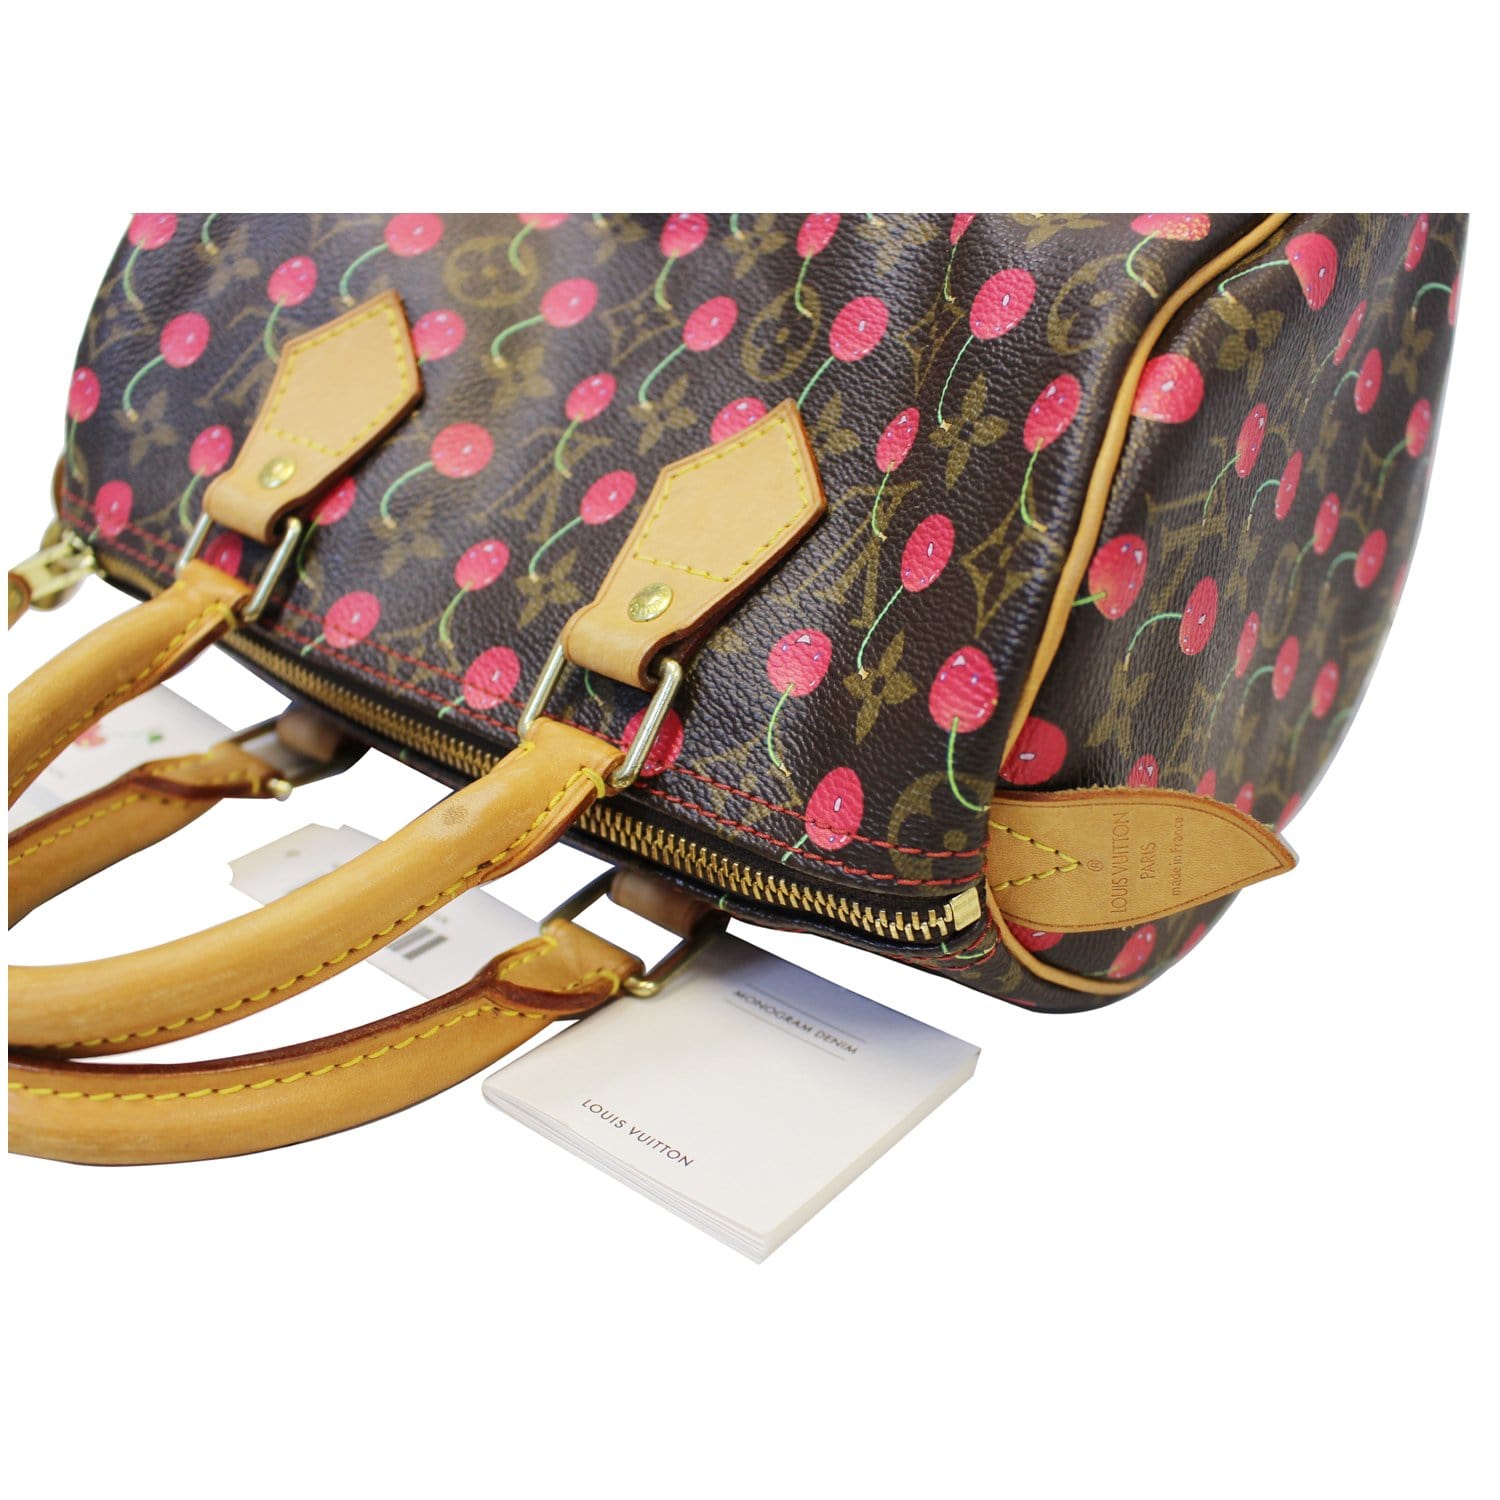 Louis Vuitton Speedy 25 Hand Bag Sp0035 Monogram Cherry